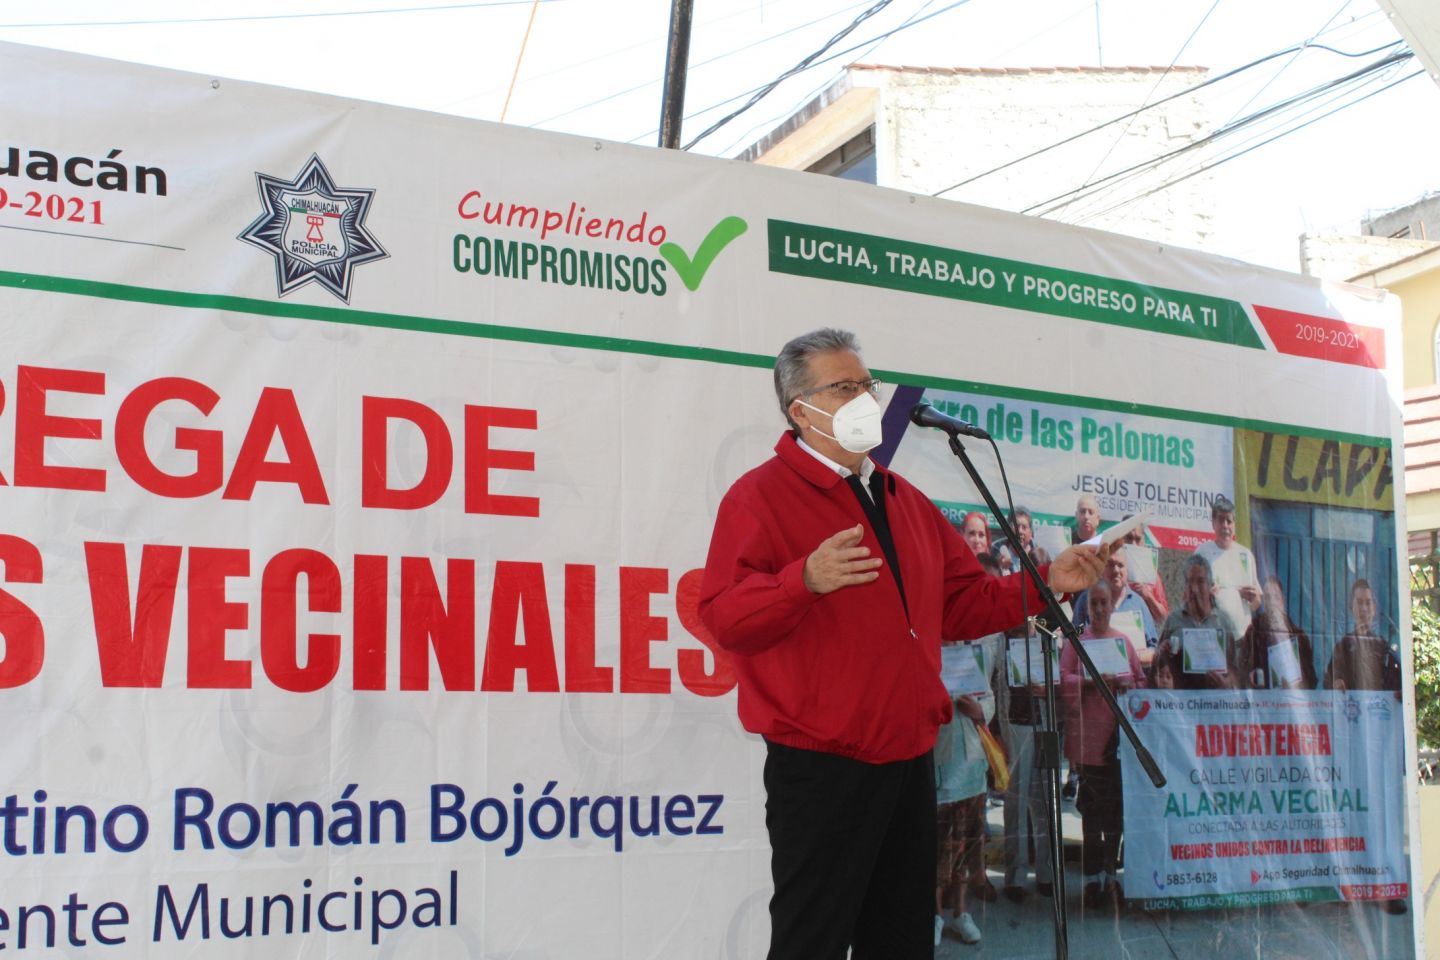 Chimalhuacán entrega más Alarmas Vecinales, impulsa espacios seguros